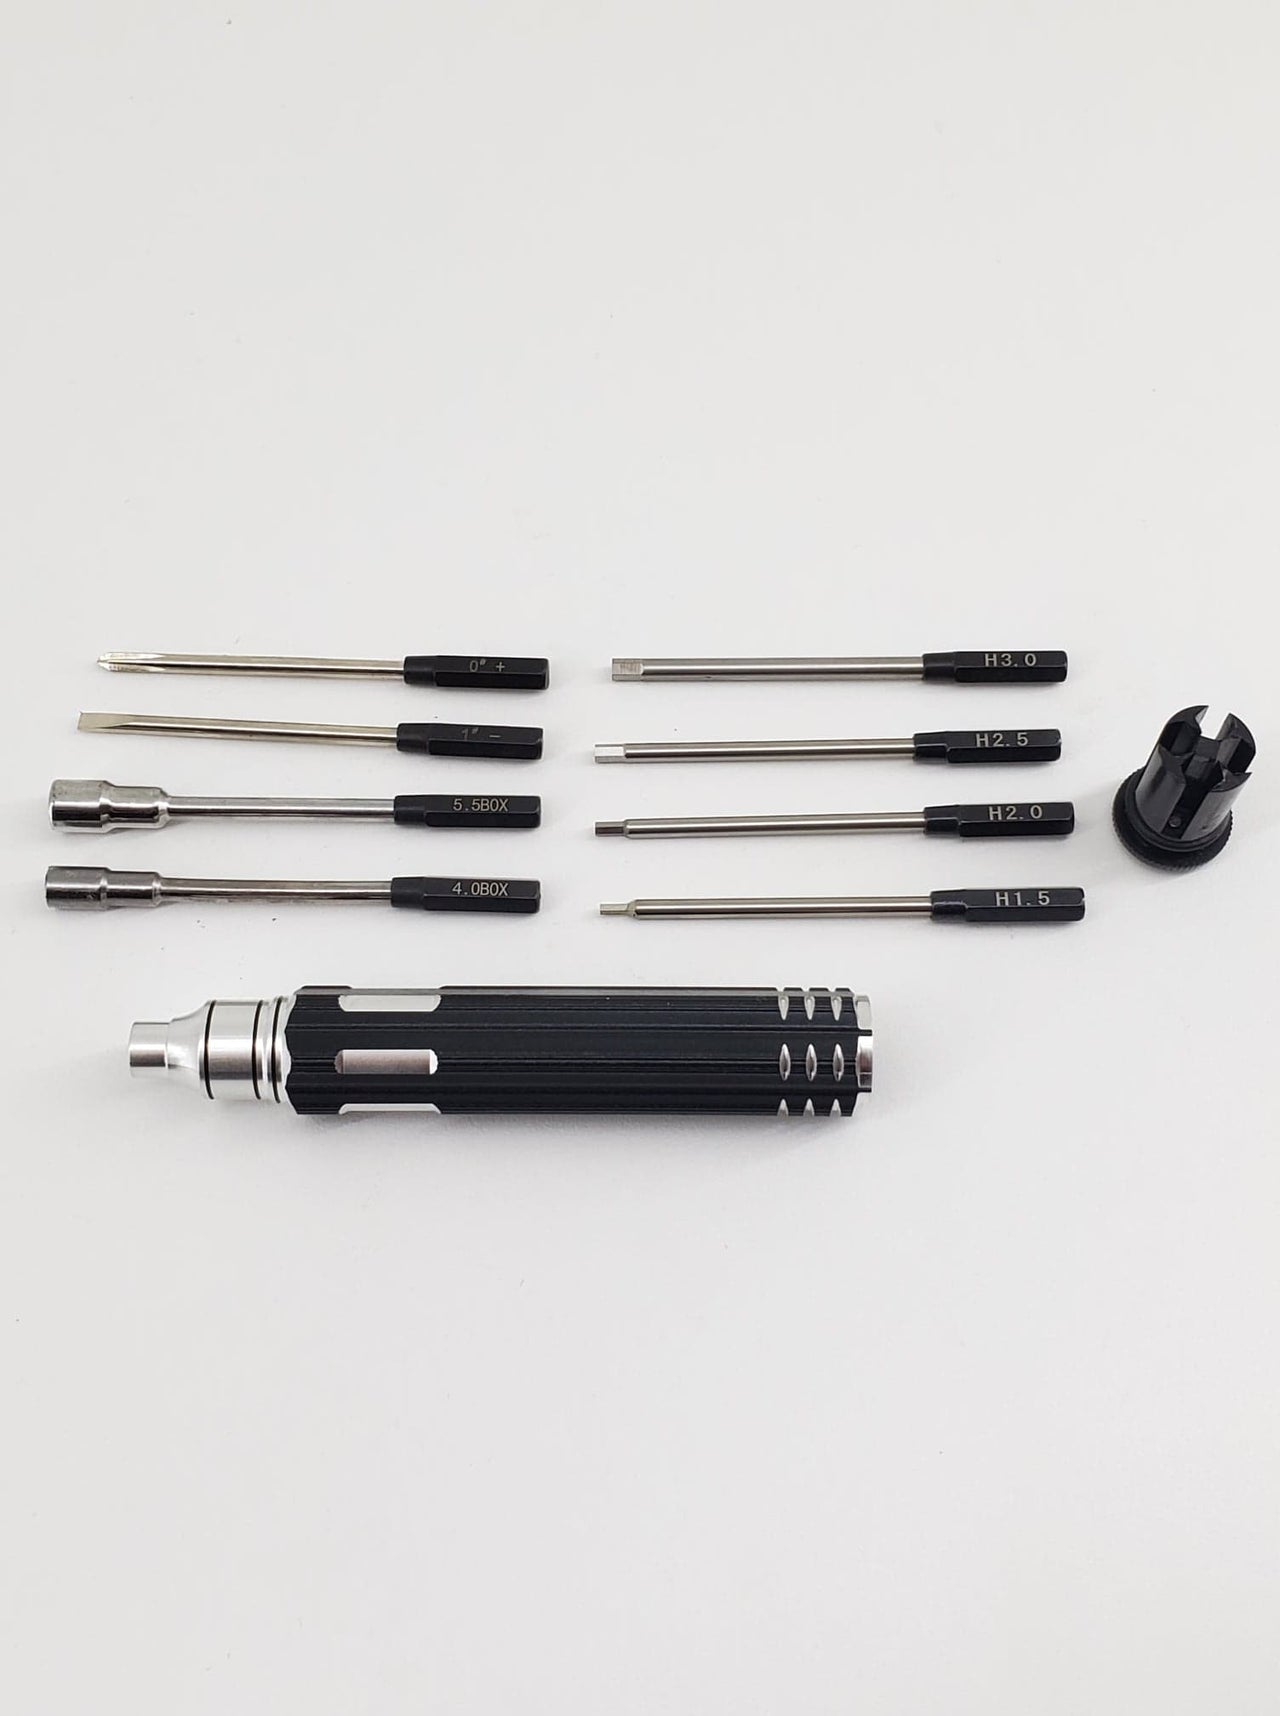 ZH-T-003 screwdrivers (8 in 1)